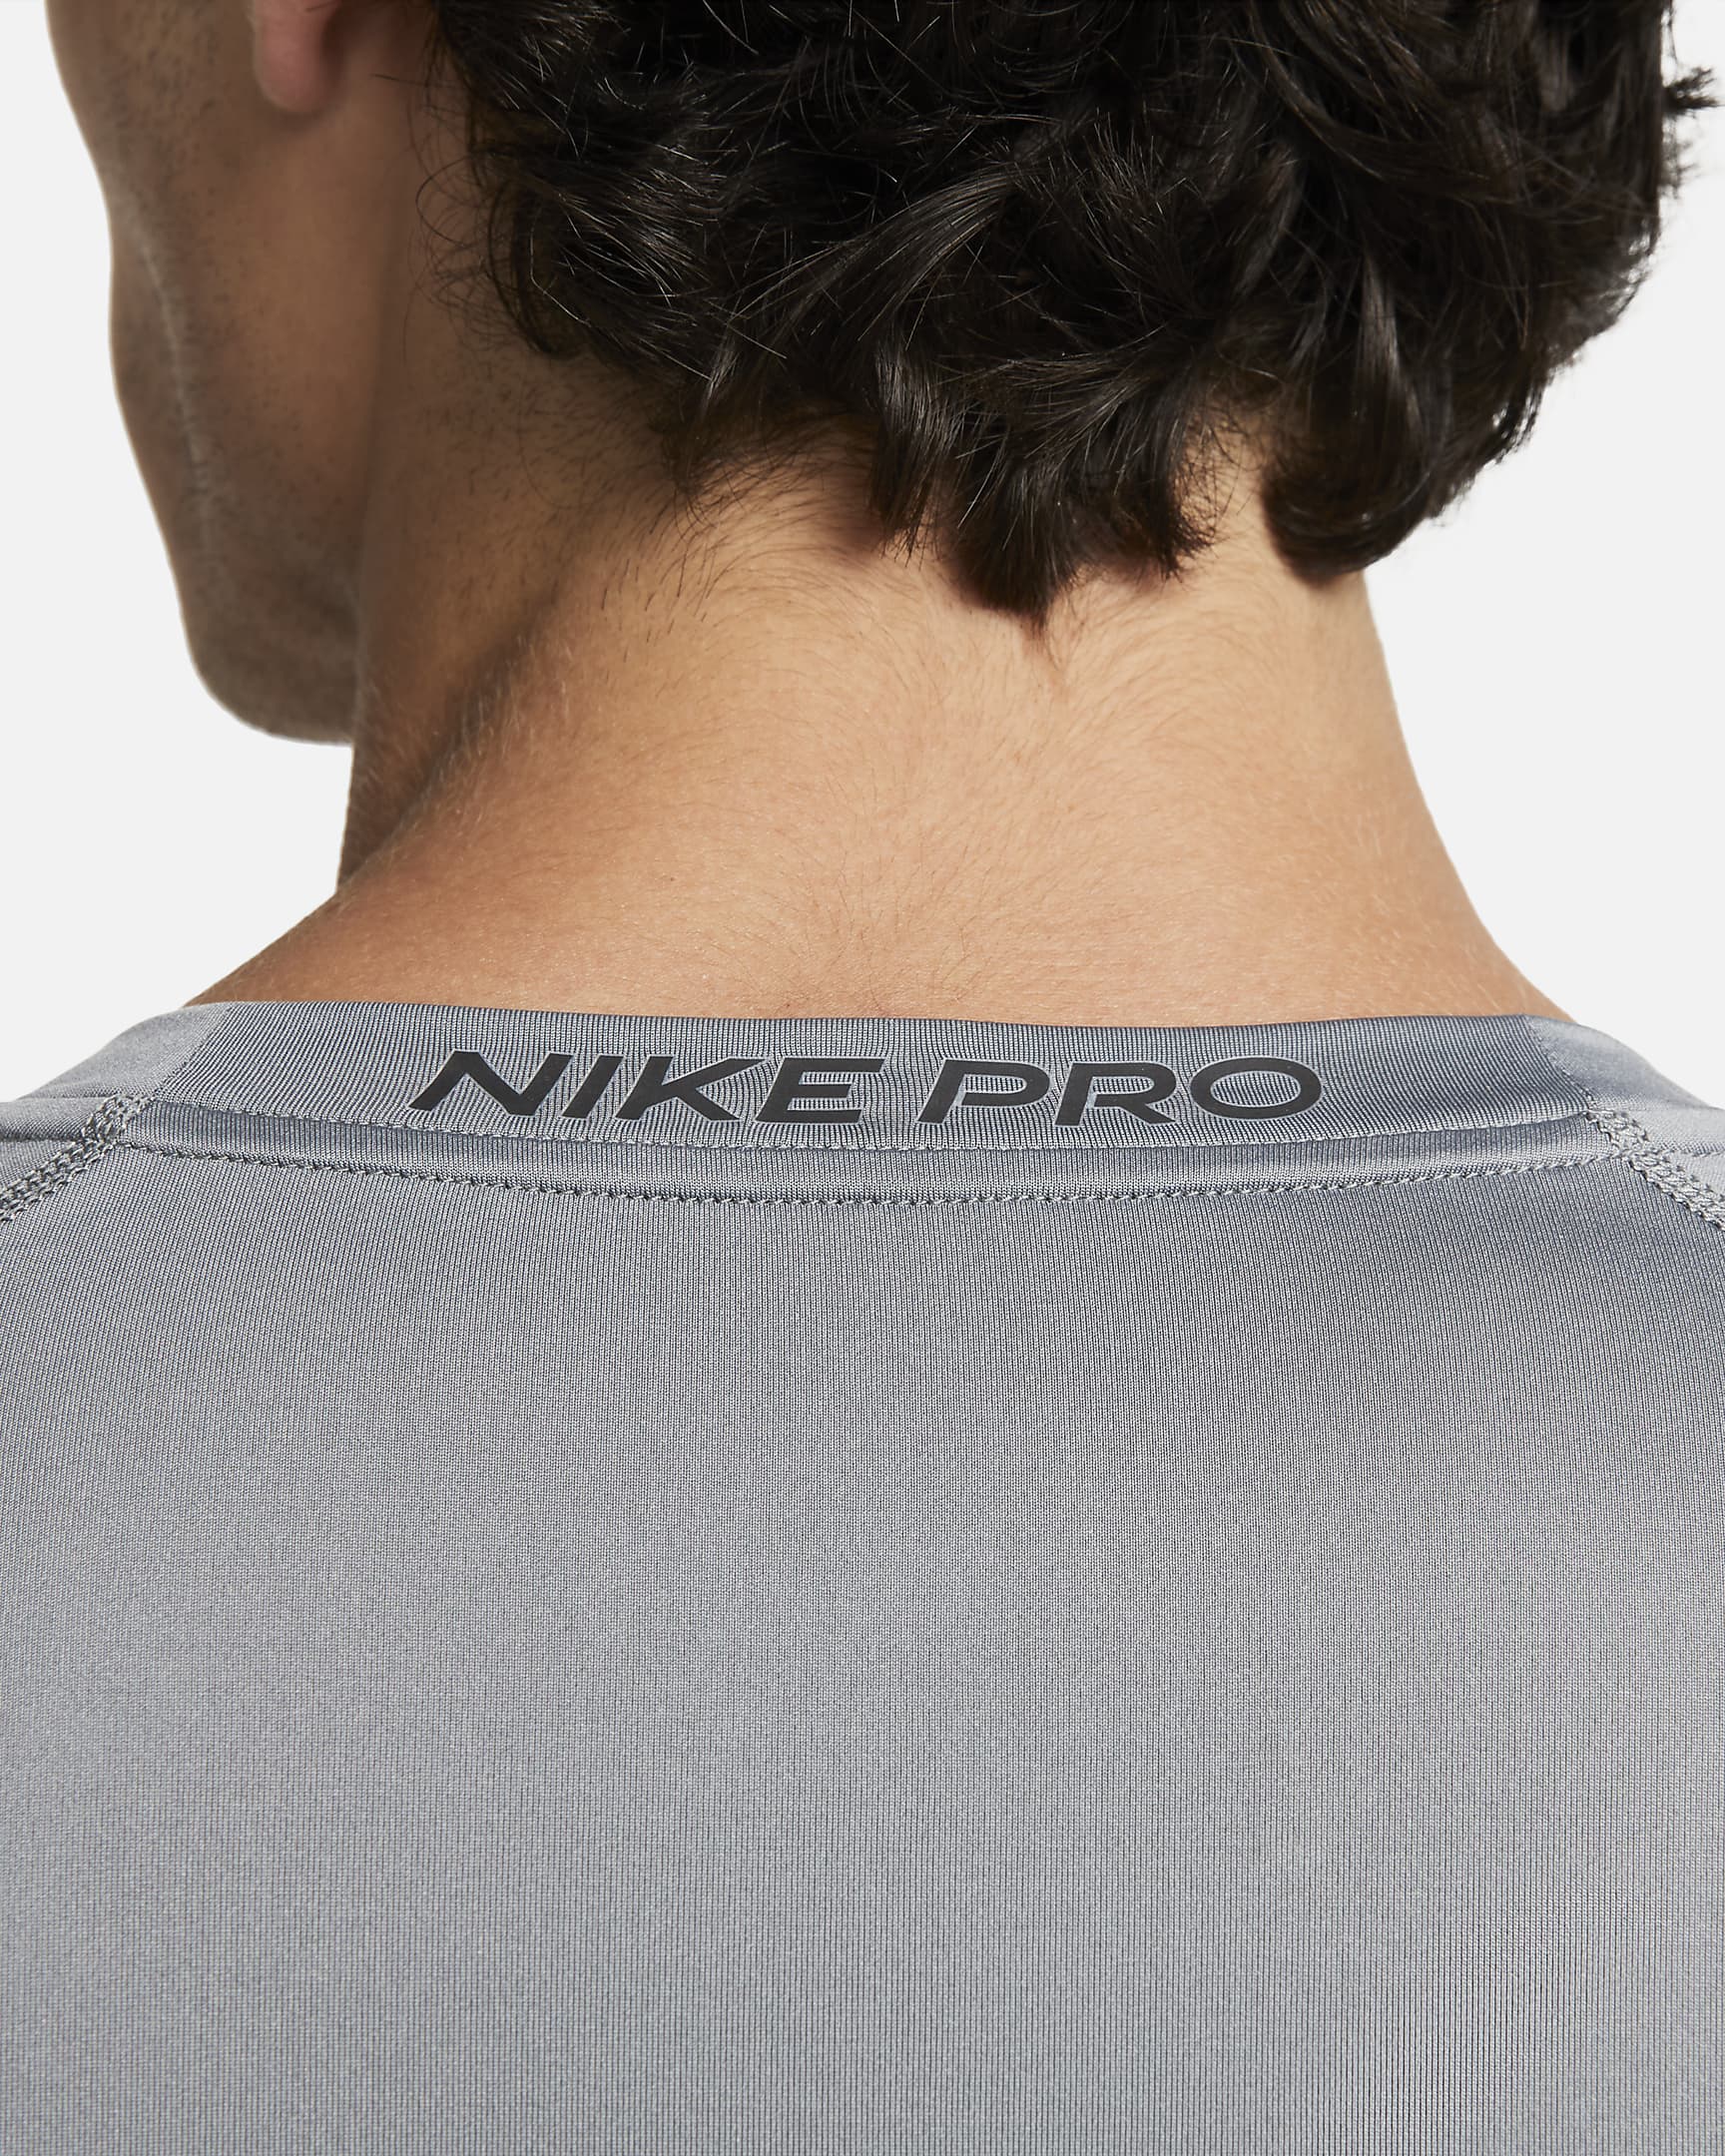 Nike Pro Men's Dri-FIT Tight Long-Sleeve Fitness Top. Nike.com